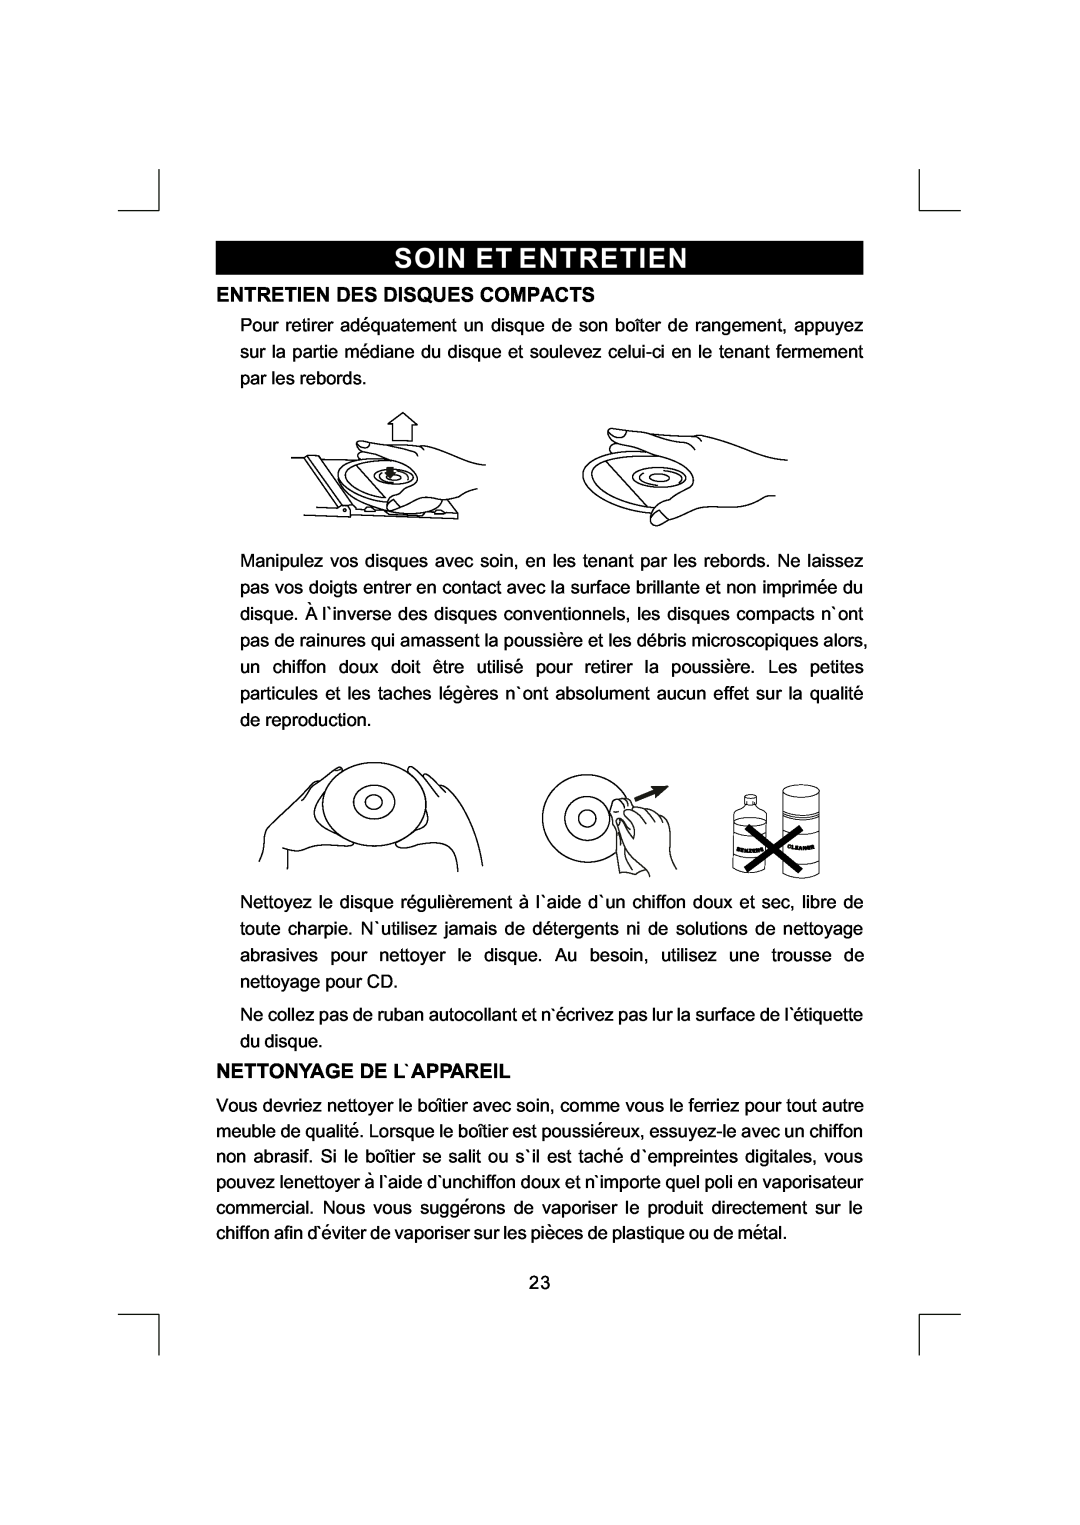 Emerson NR290TTC owner manual Entretien Des Disques Compacts, Nettonyage De L Appareil, Soin Et Entretien 